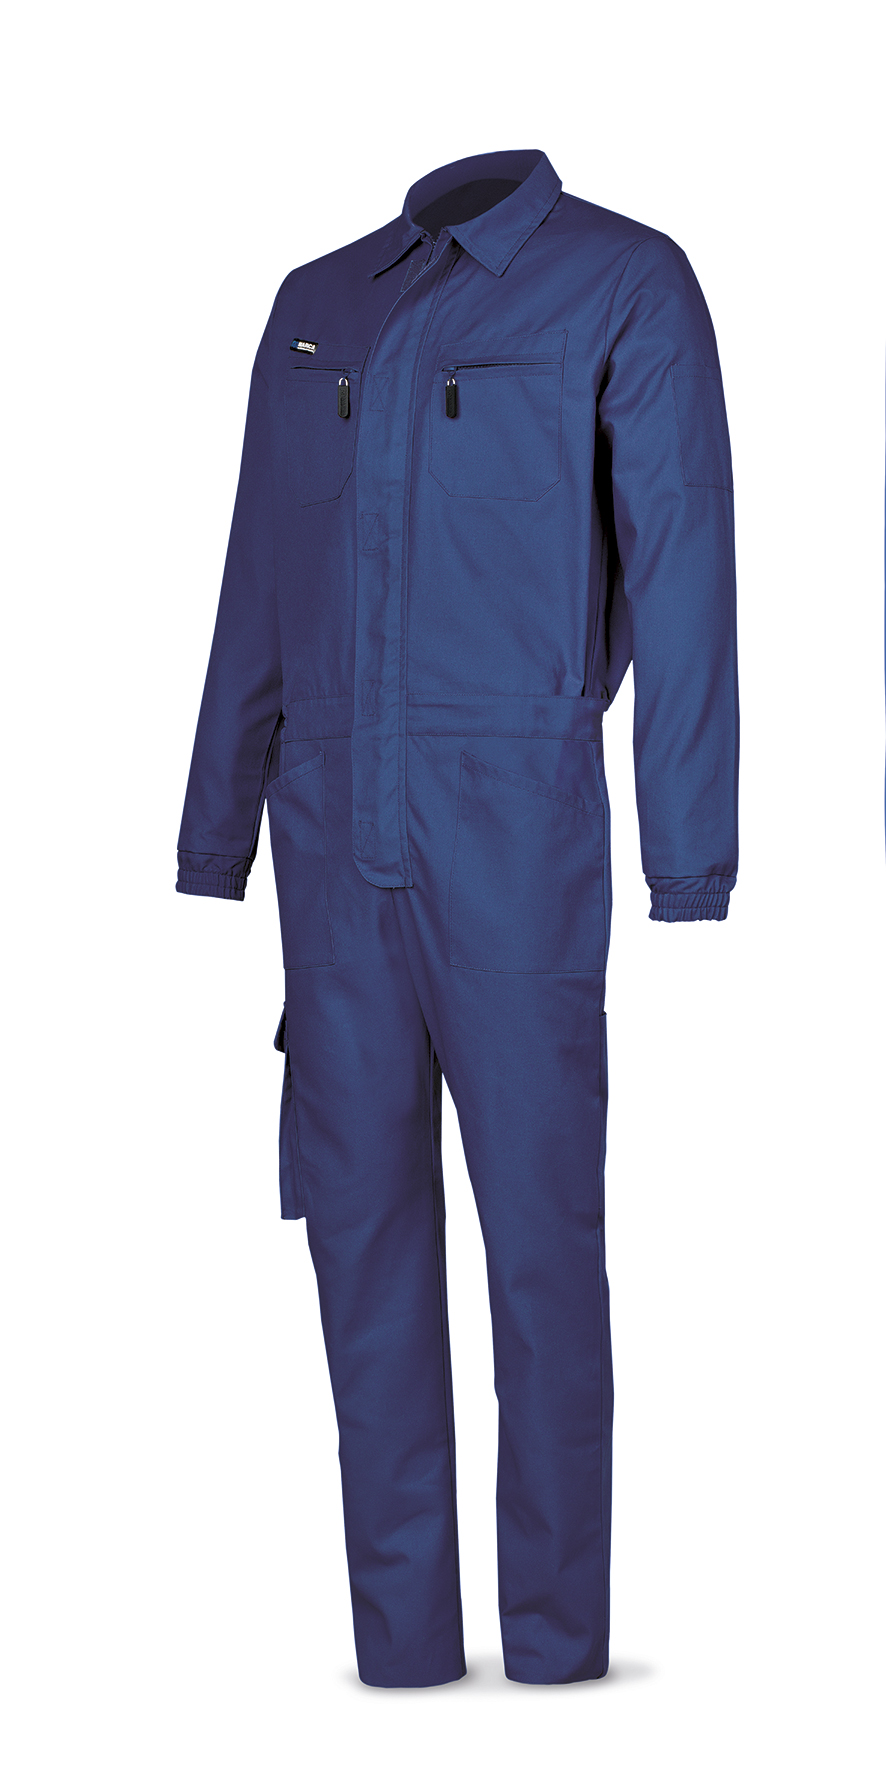 488-B Top Vestuario Laboral Serie Top Buzo azulina algodón de 245 g.